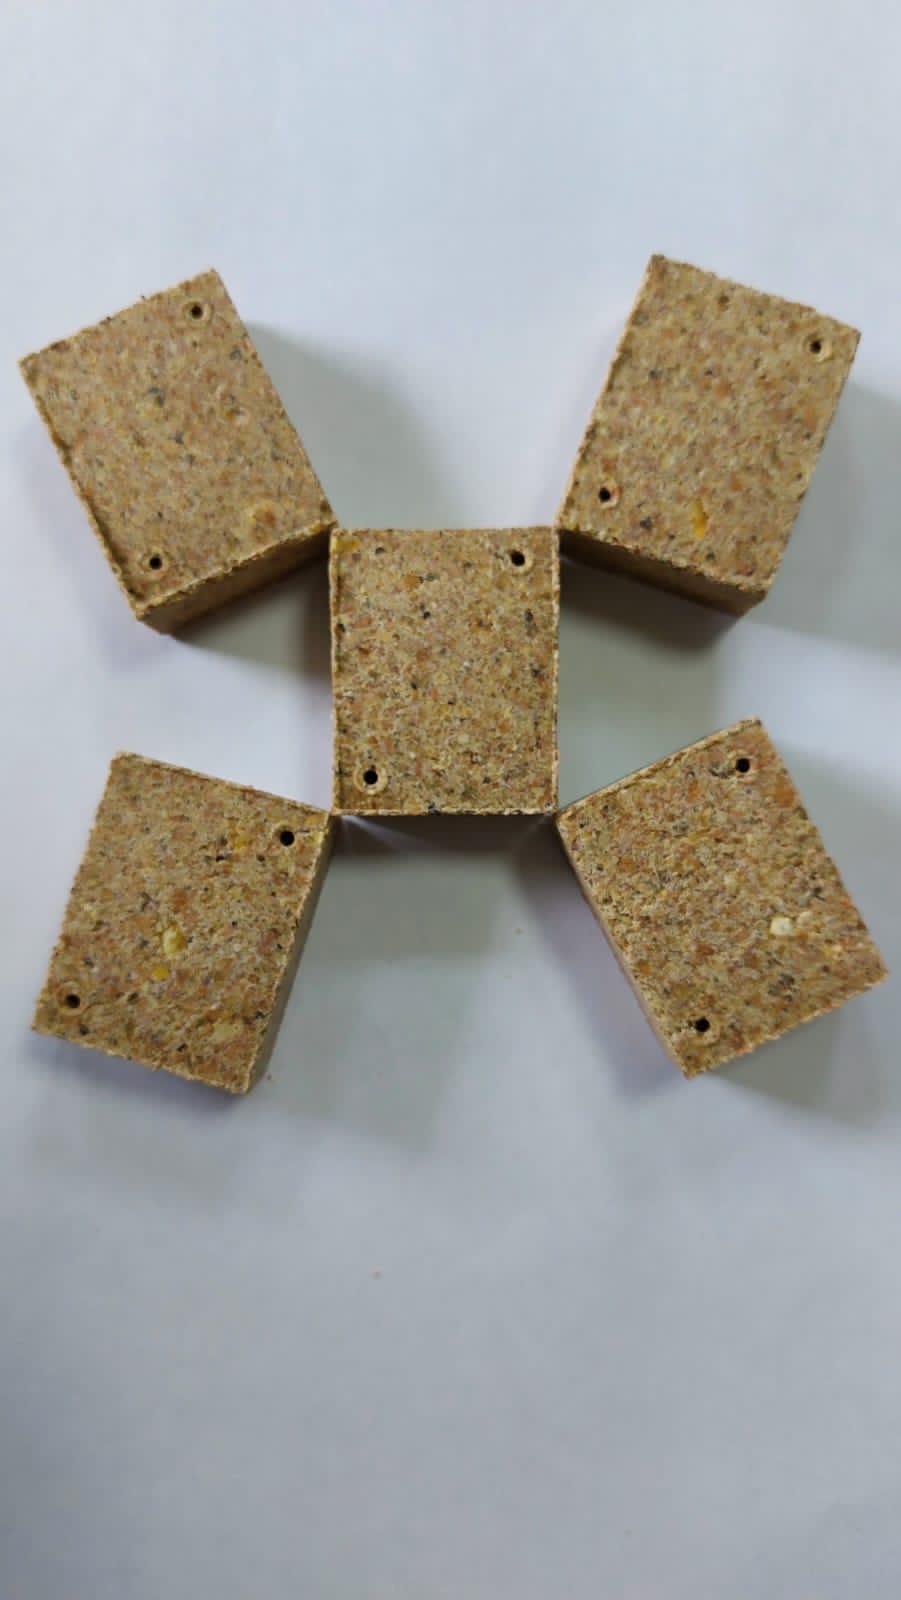 Жмыховые кукурузные кубики повышенной аттрактивности МЕД